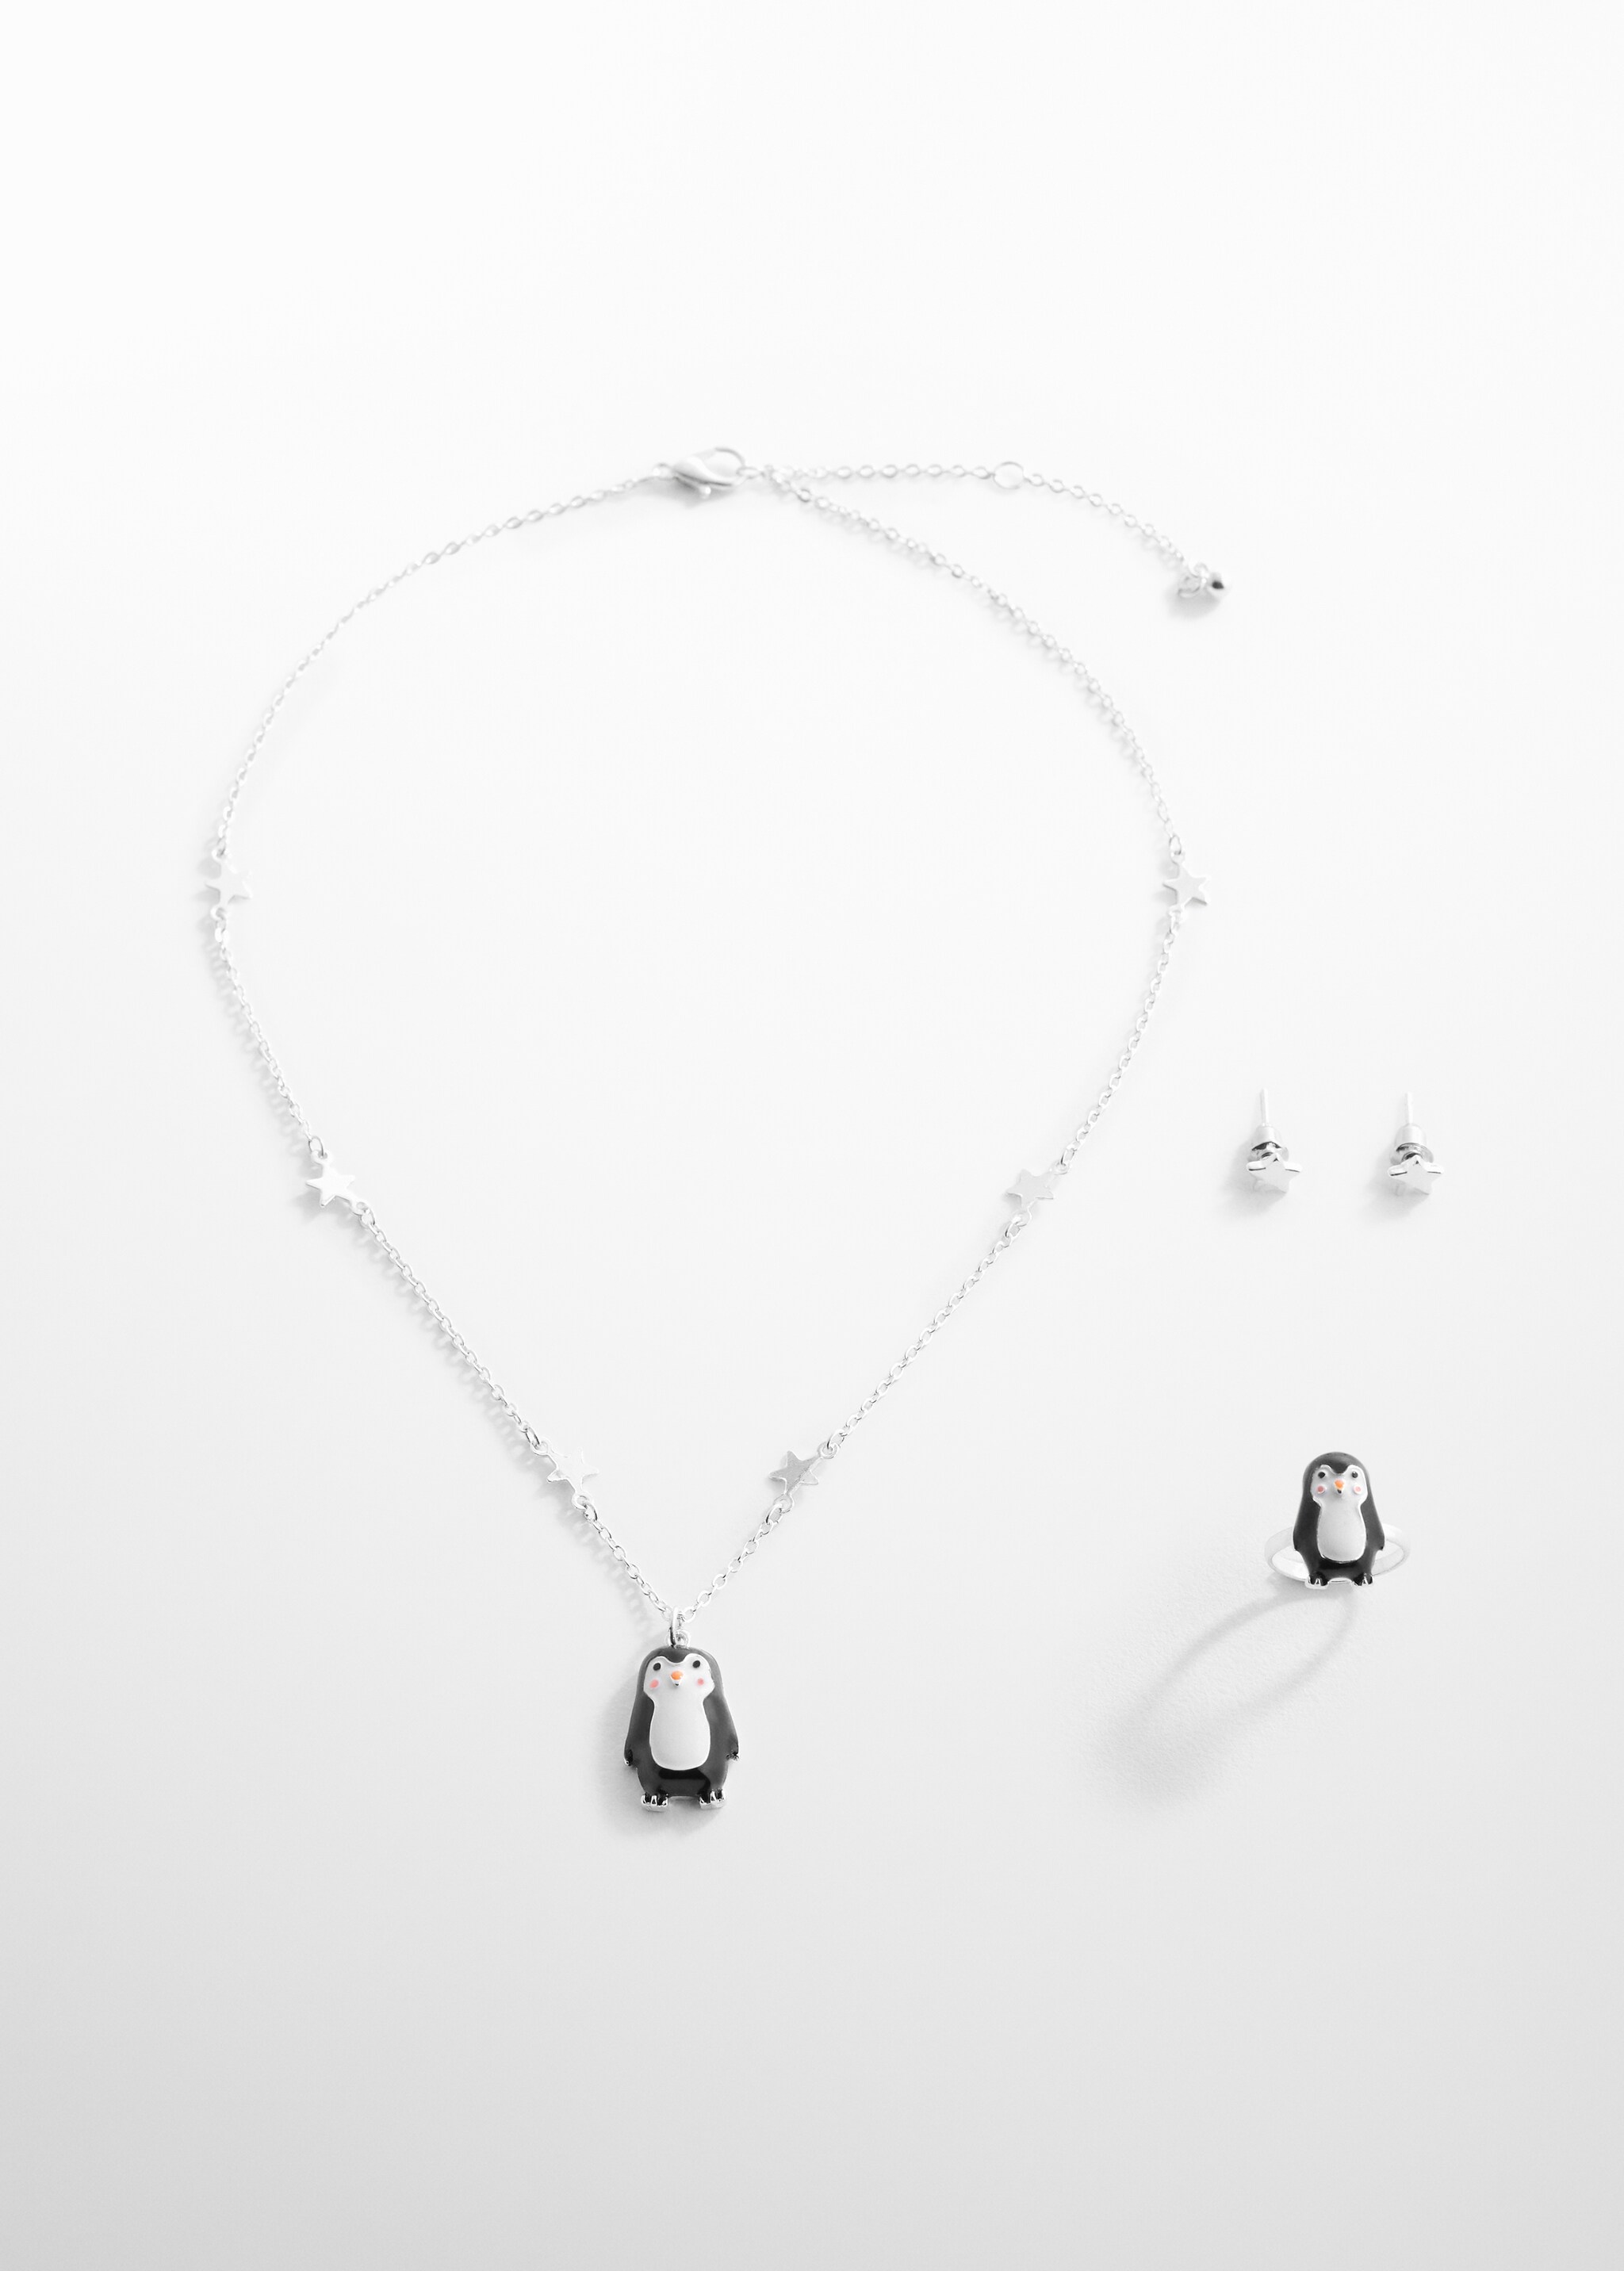 Комплект ожерелье, кольцо и серьги - Изделие без модели